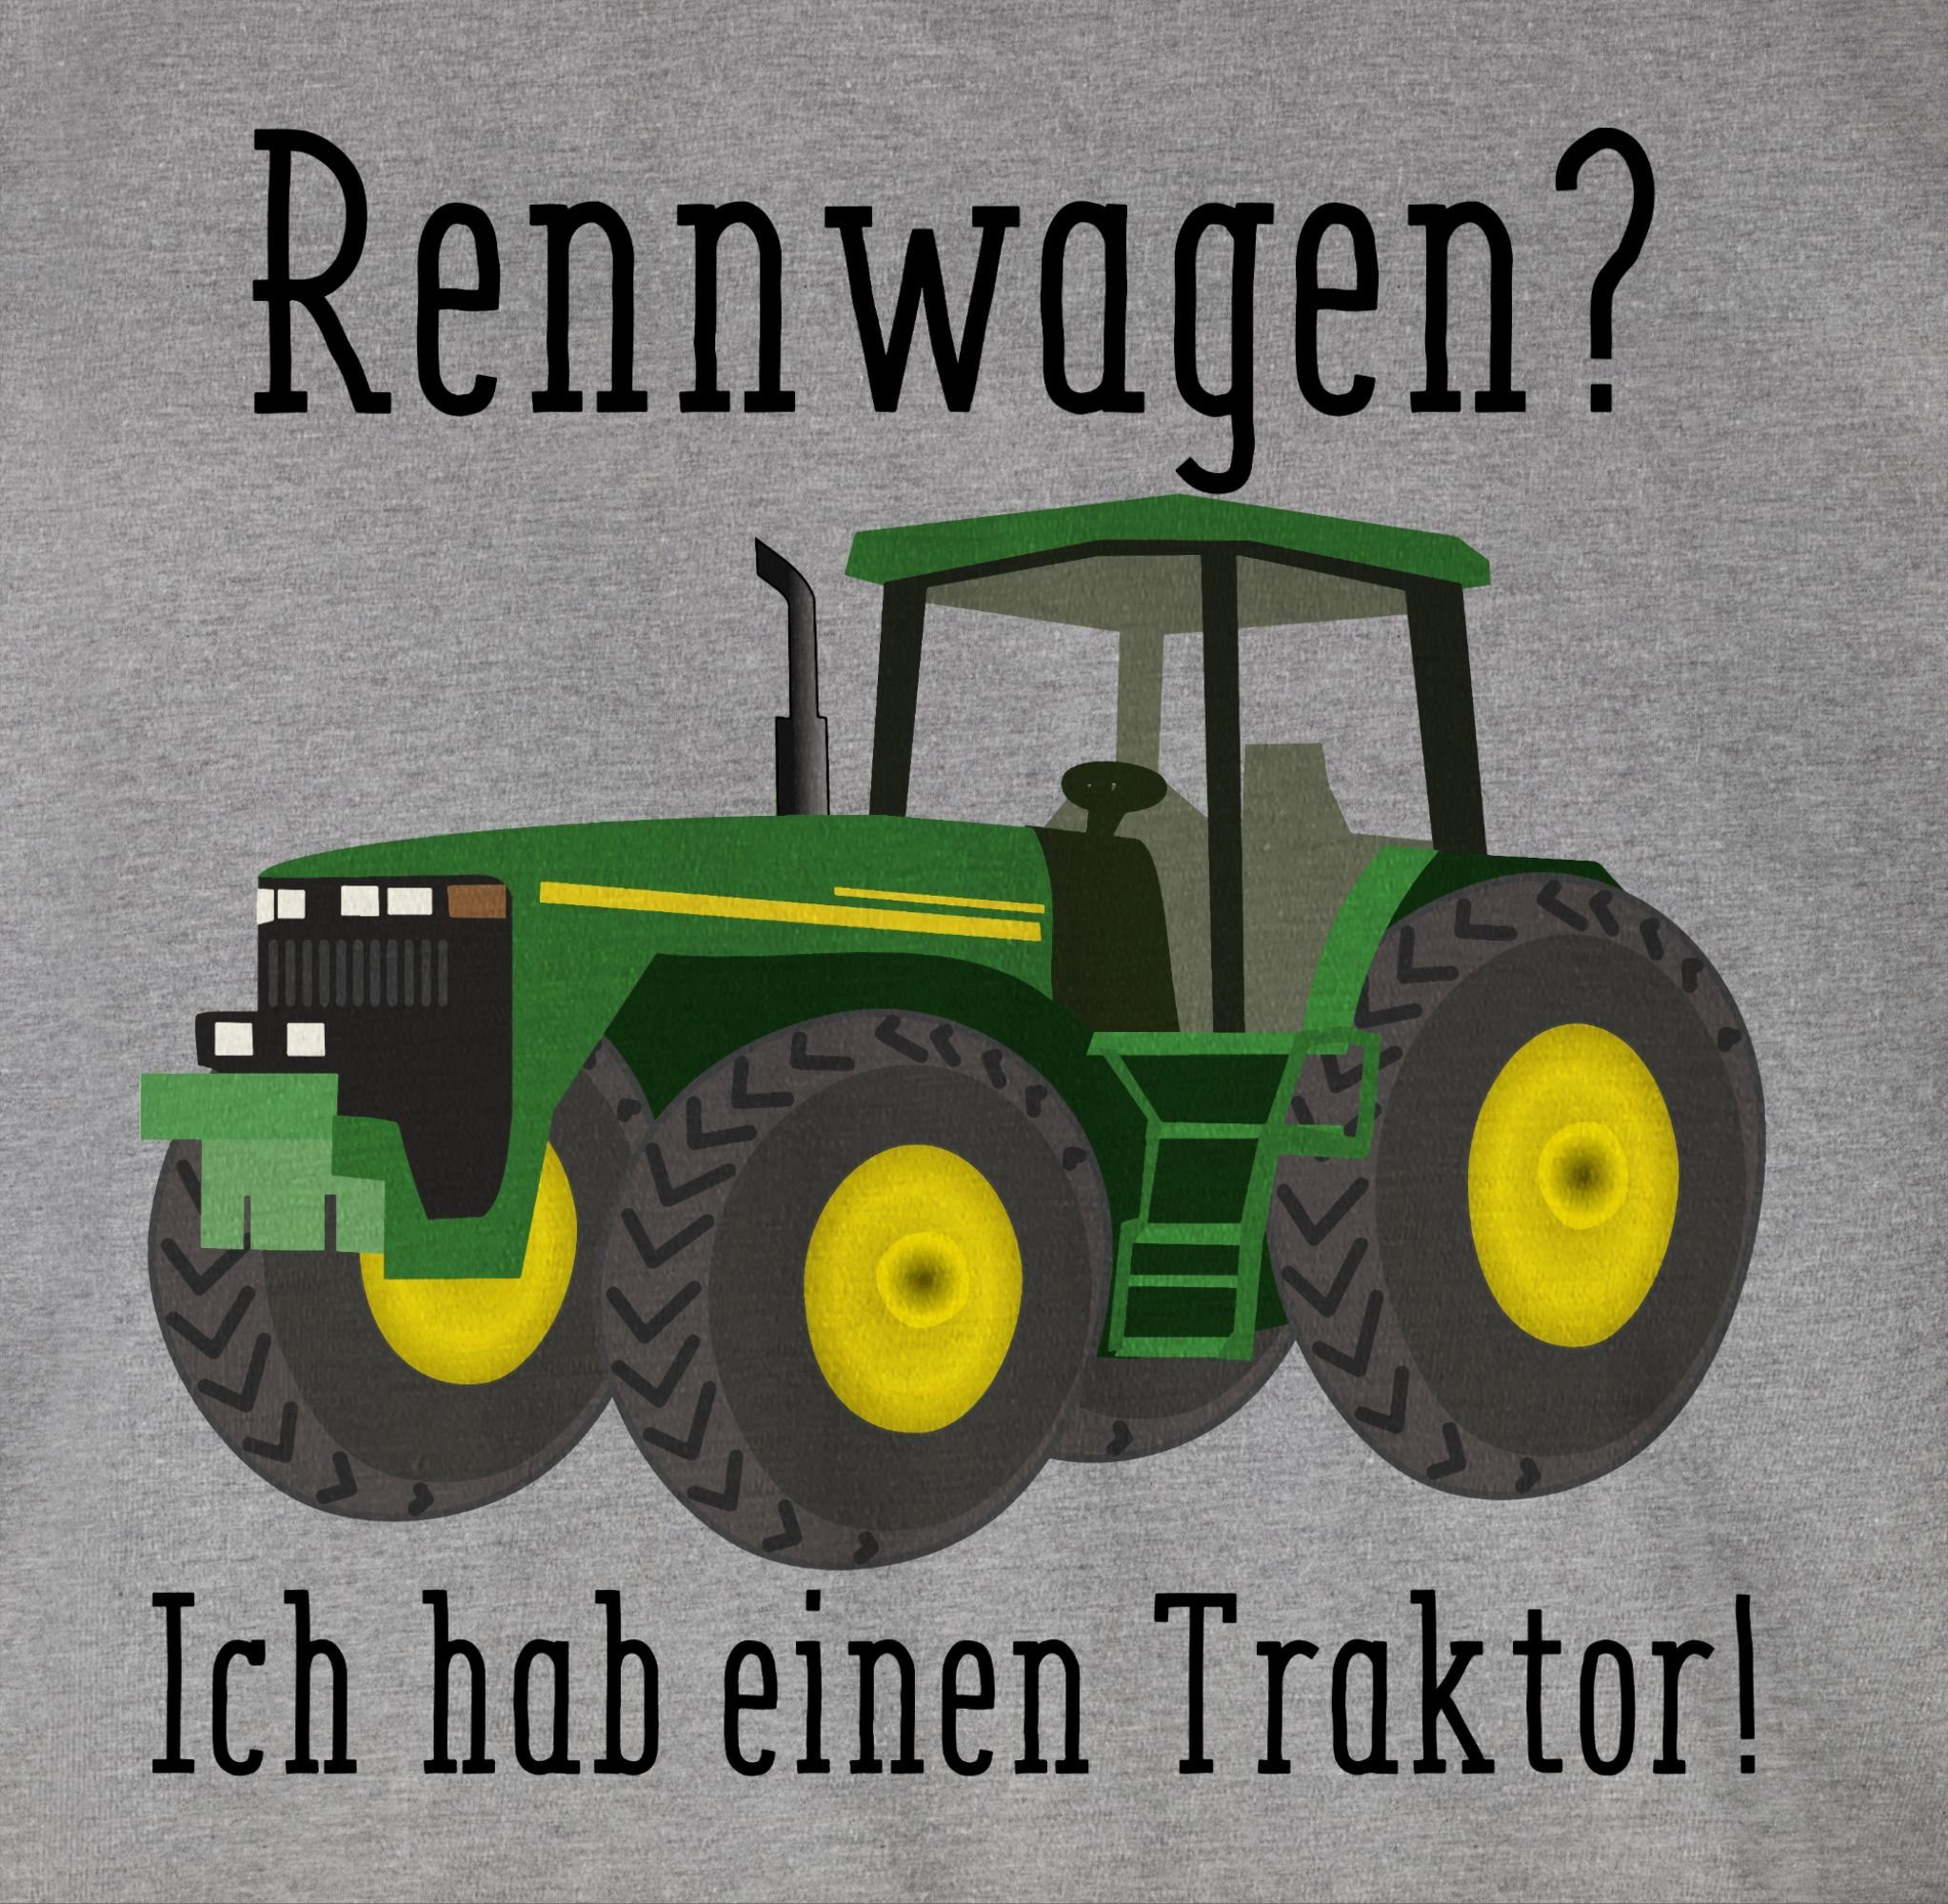 T-Shirt Ges einen Traktor Trecker Bauer Landwirt Rennwagen Shirtracer Traktor - Grau 1 Ich meliert Geschenk habe